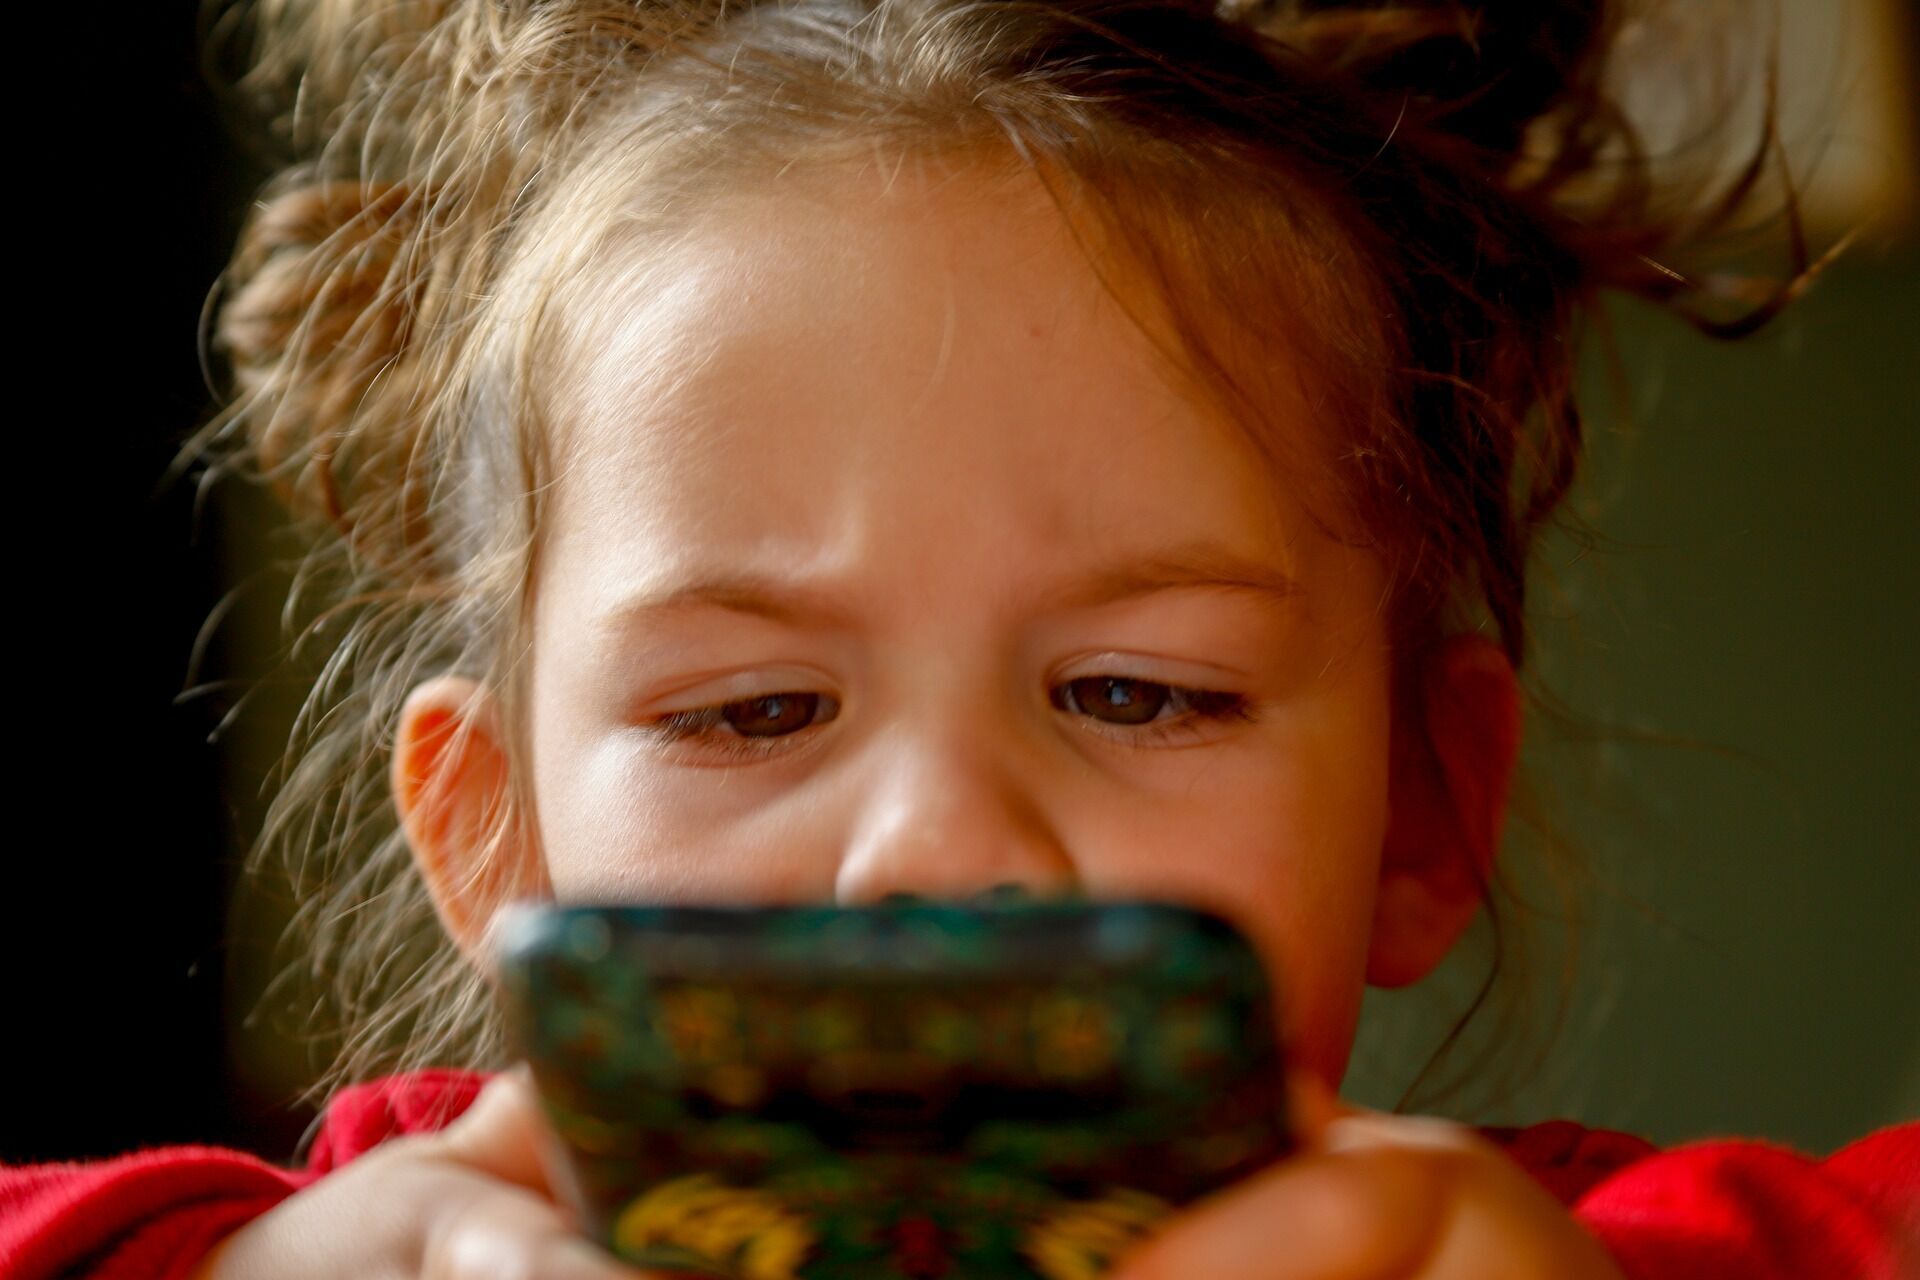 Врачи рекомендуют контролировать контент, который доступен детям в соцсетях